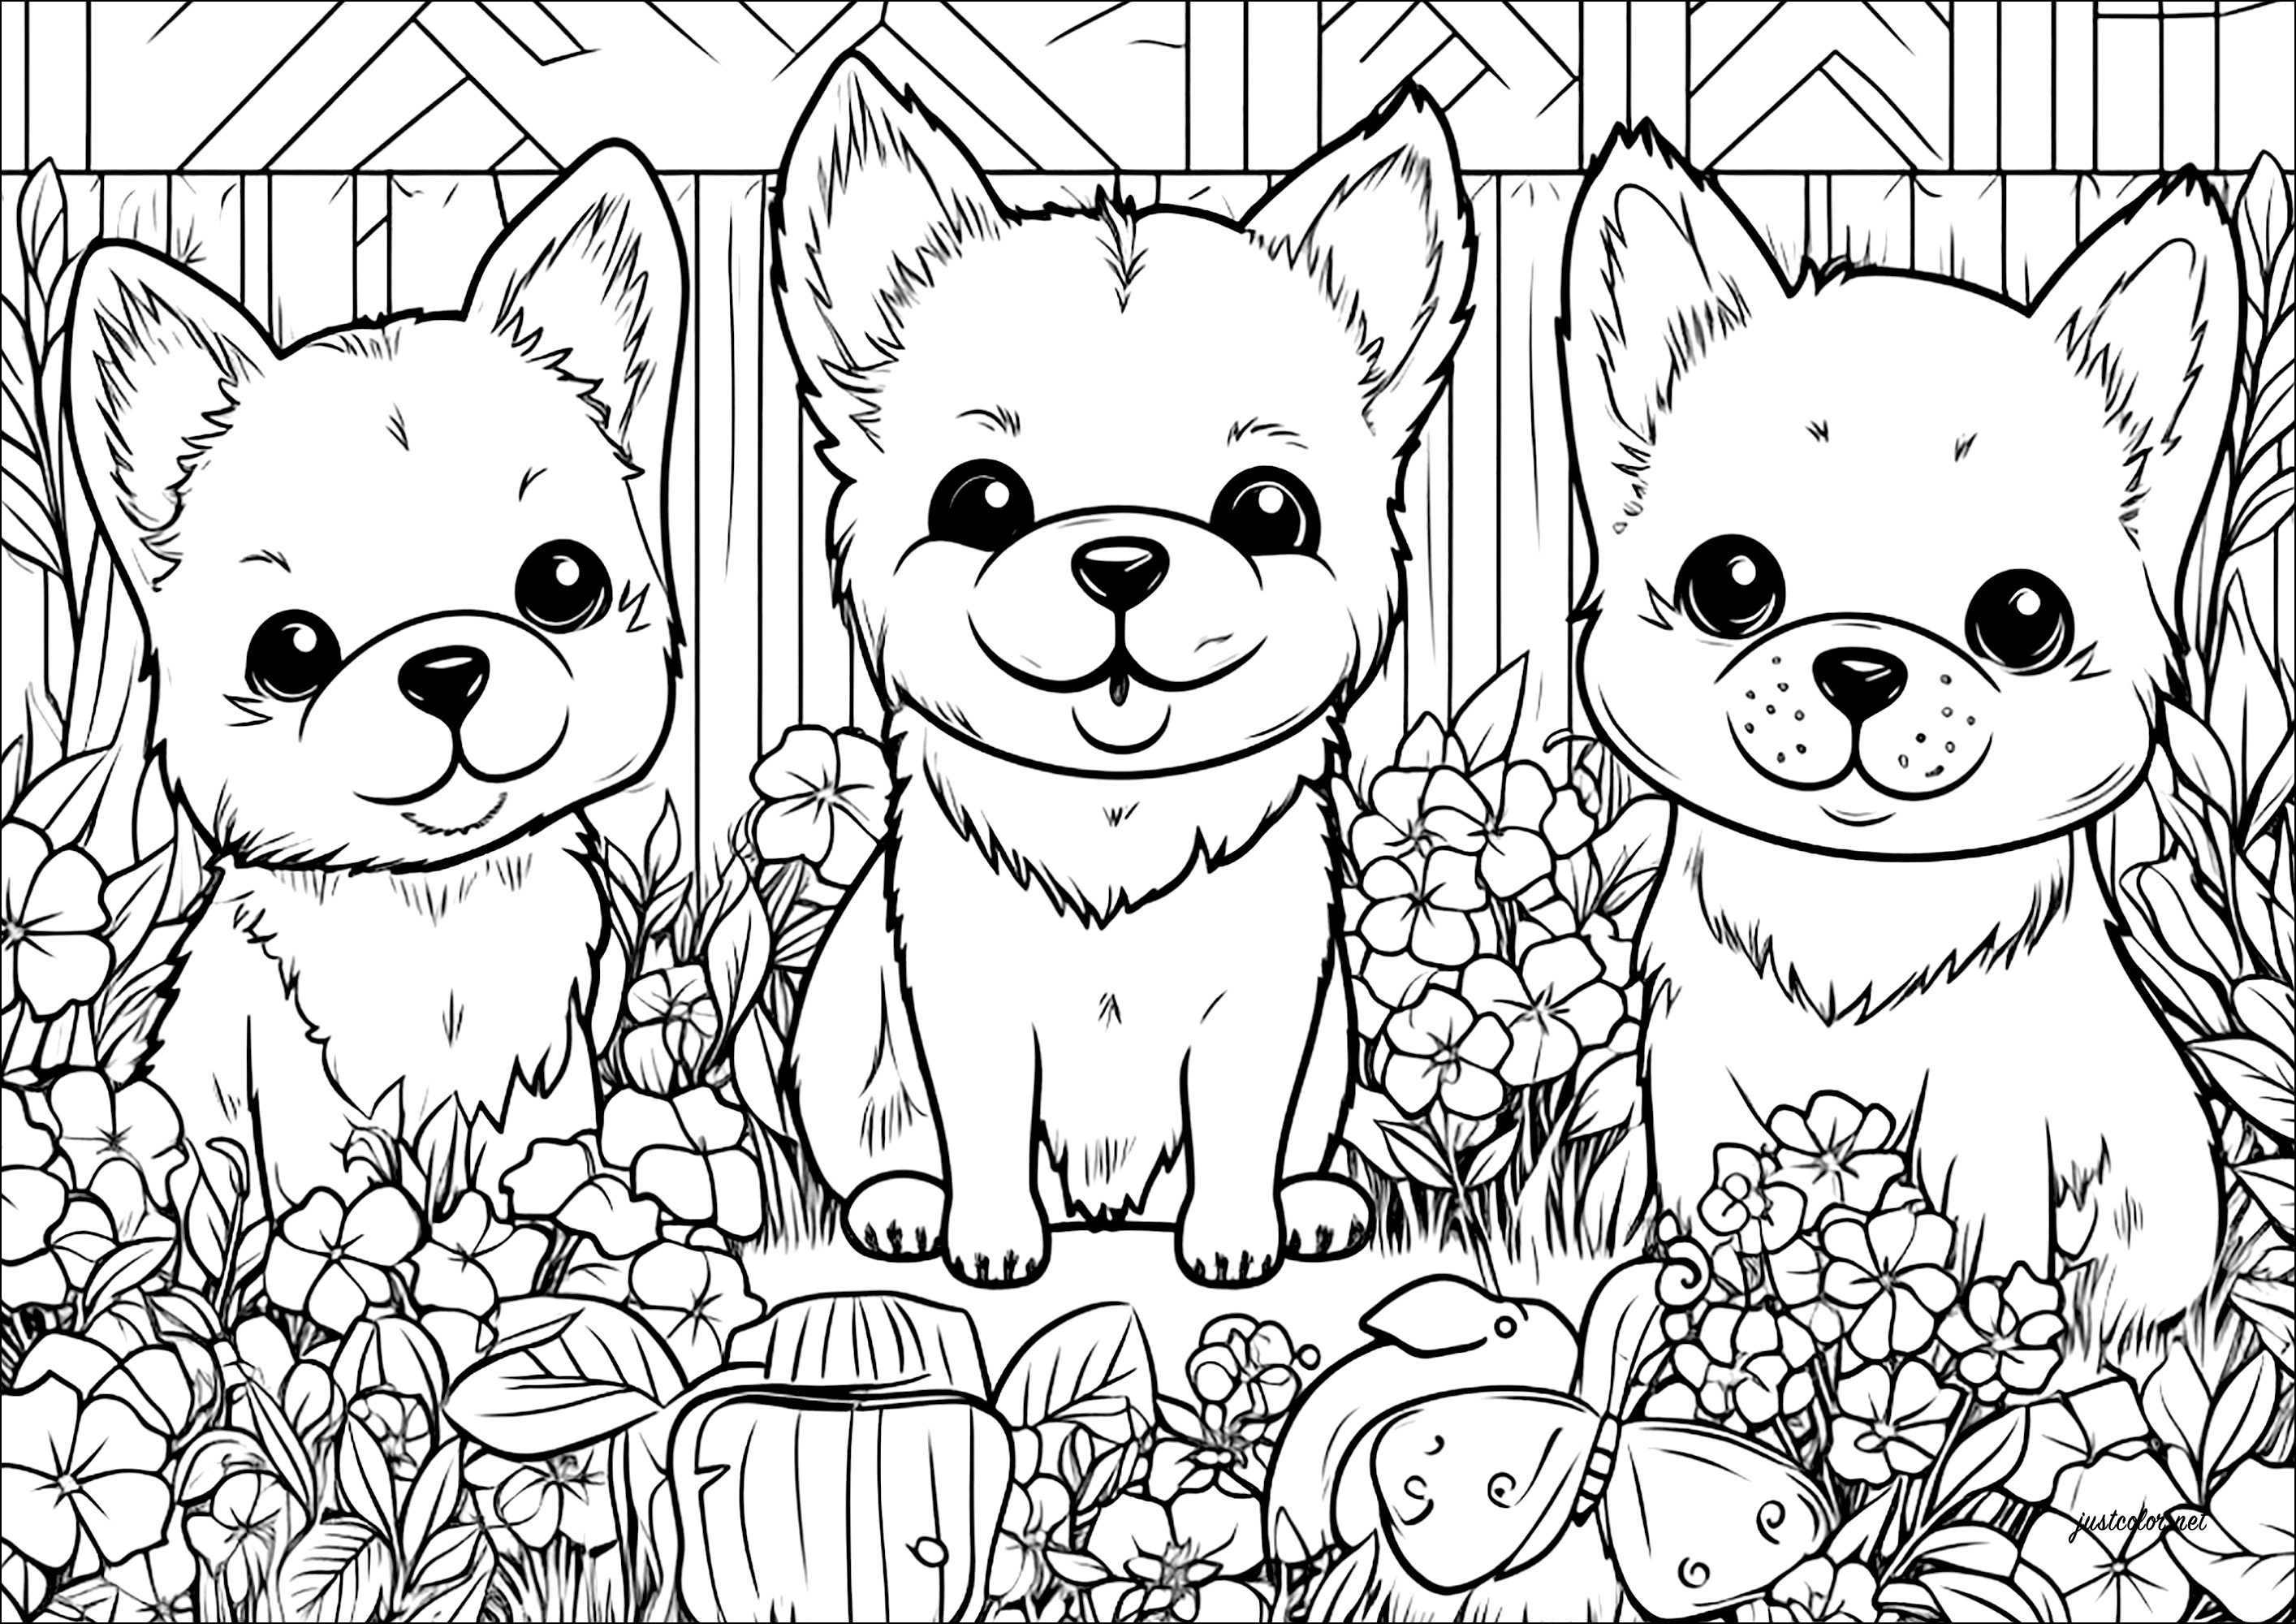 Três cães pequenos num jardim de flores. Uma bonita página para colorir, com muitos pormenores sobre as flores e a vegetação do jardim.